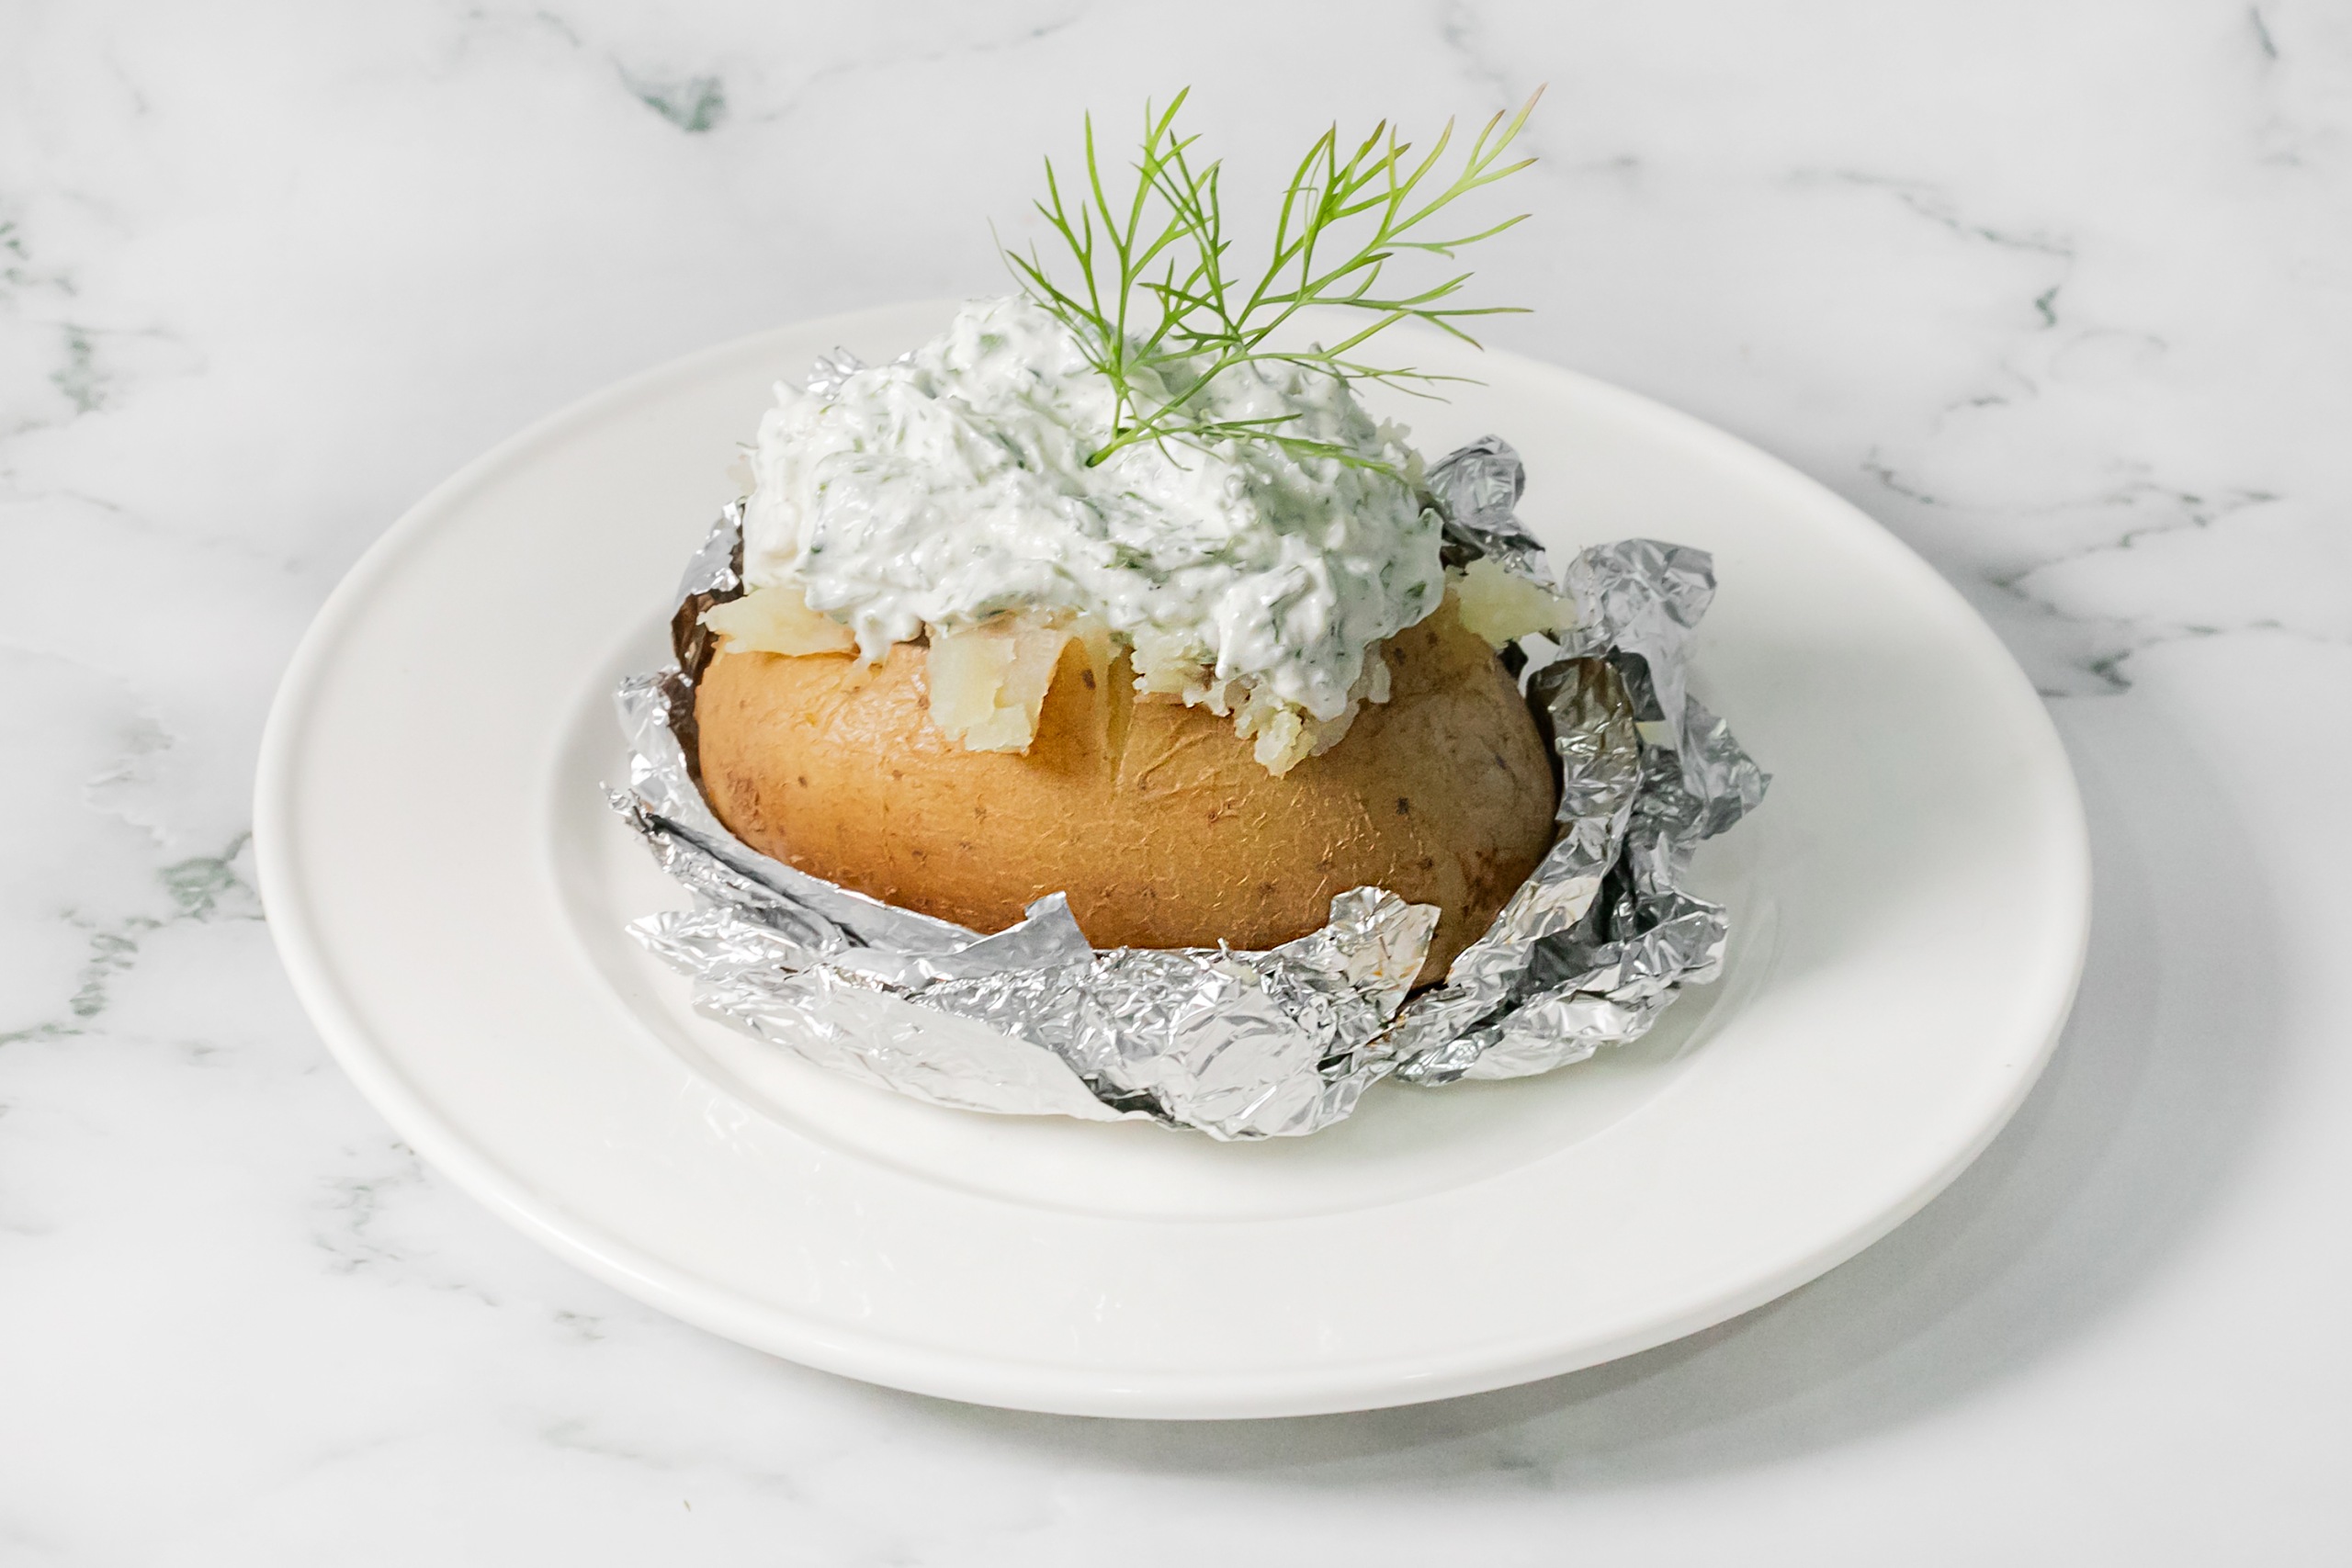 13 лучших способов приготовить картошку в духовке